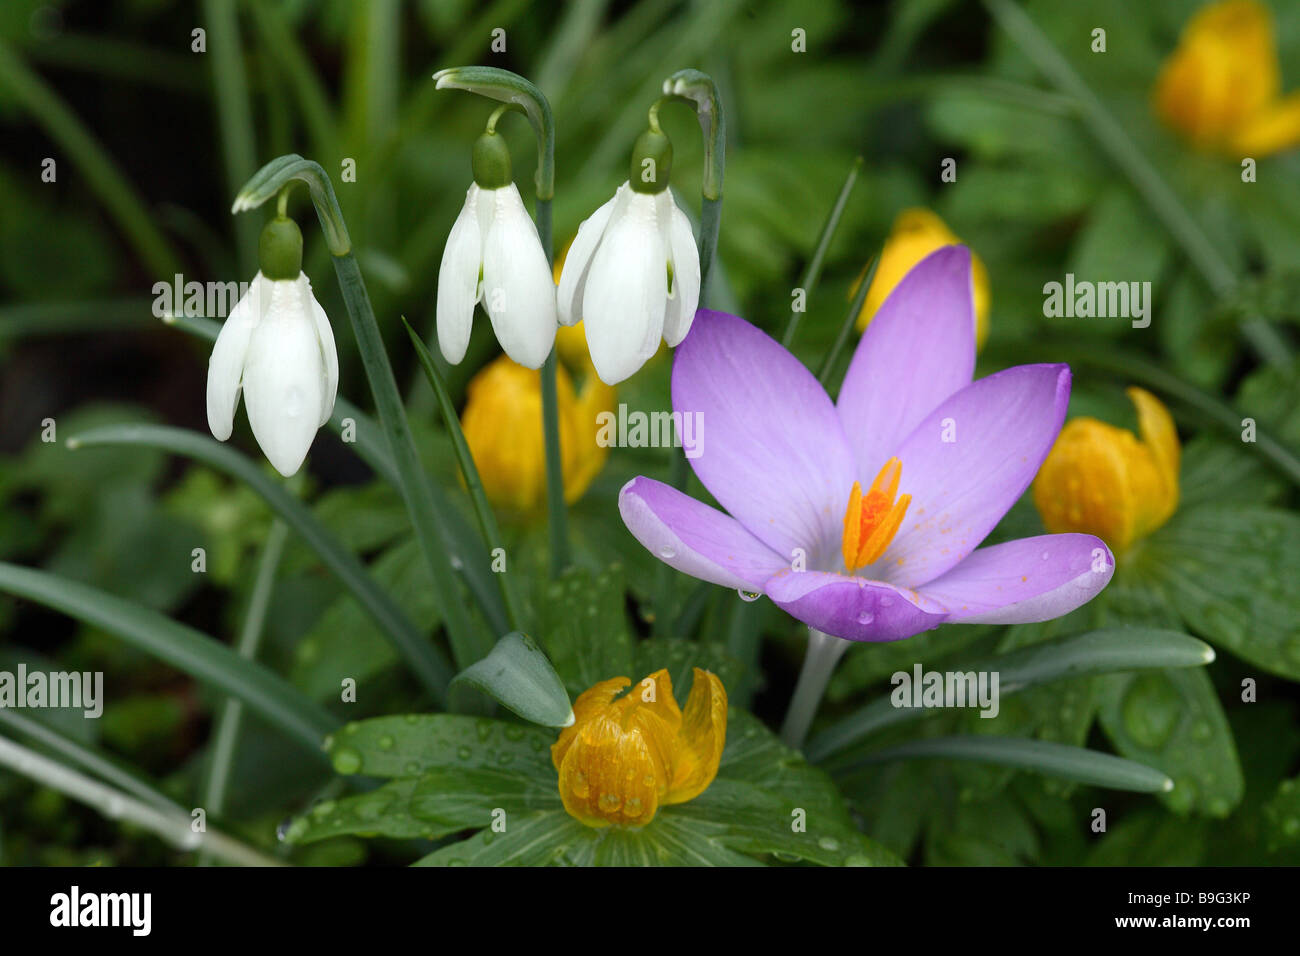 Frühlings-Krokus Winterling Schneeglöckchen Stockfotografie - Alamy